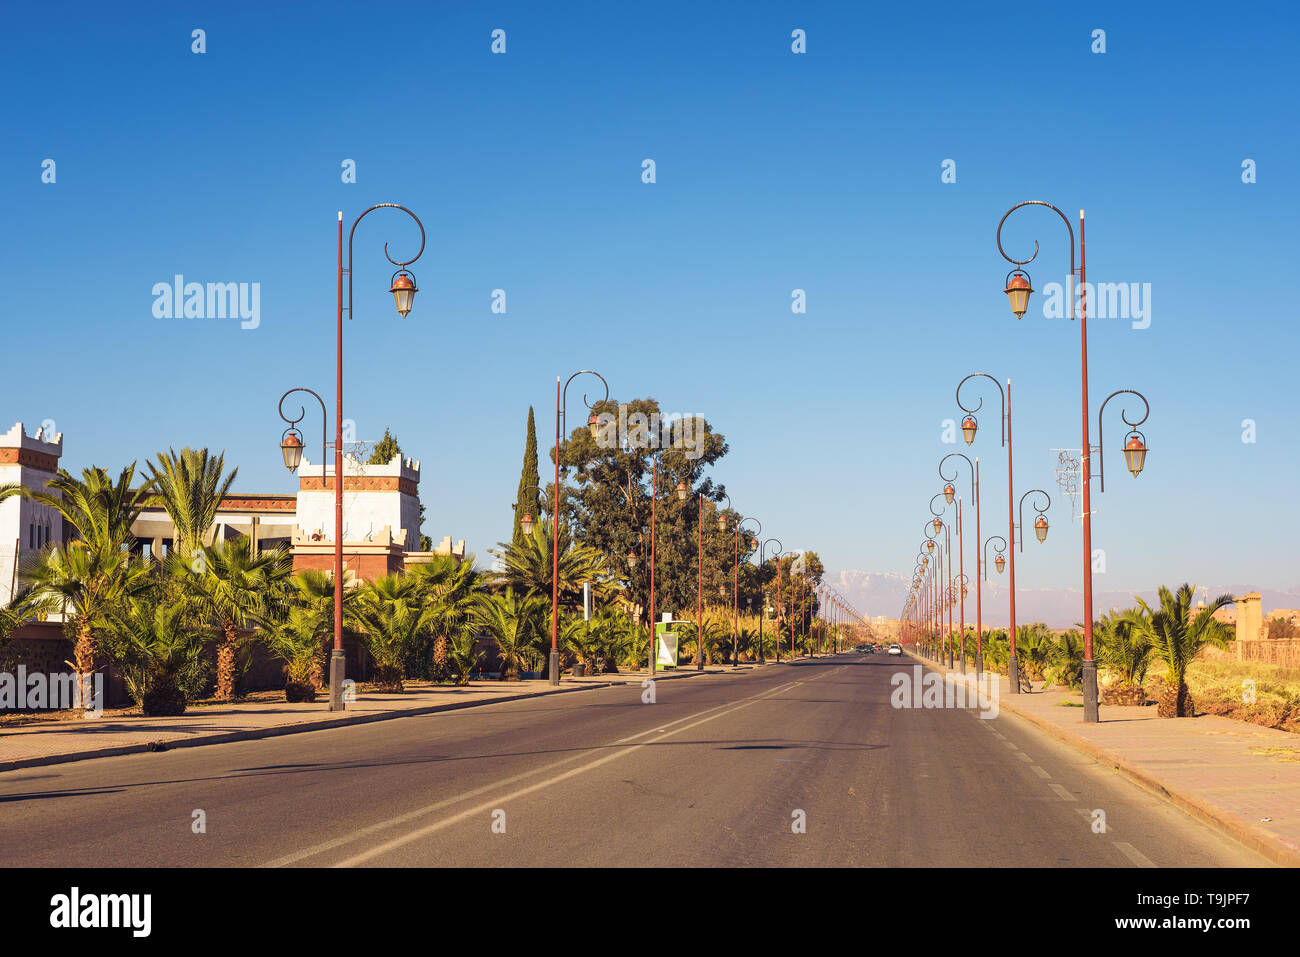 Route avec rangée de lampadaires de style dans le centre de Ouarzazate, Maroc Banque D'Images